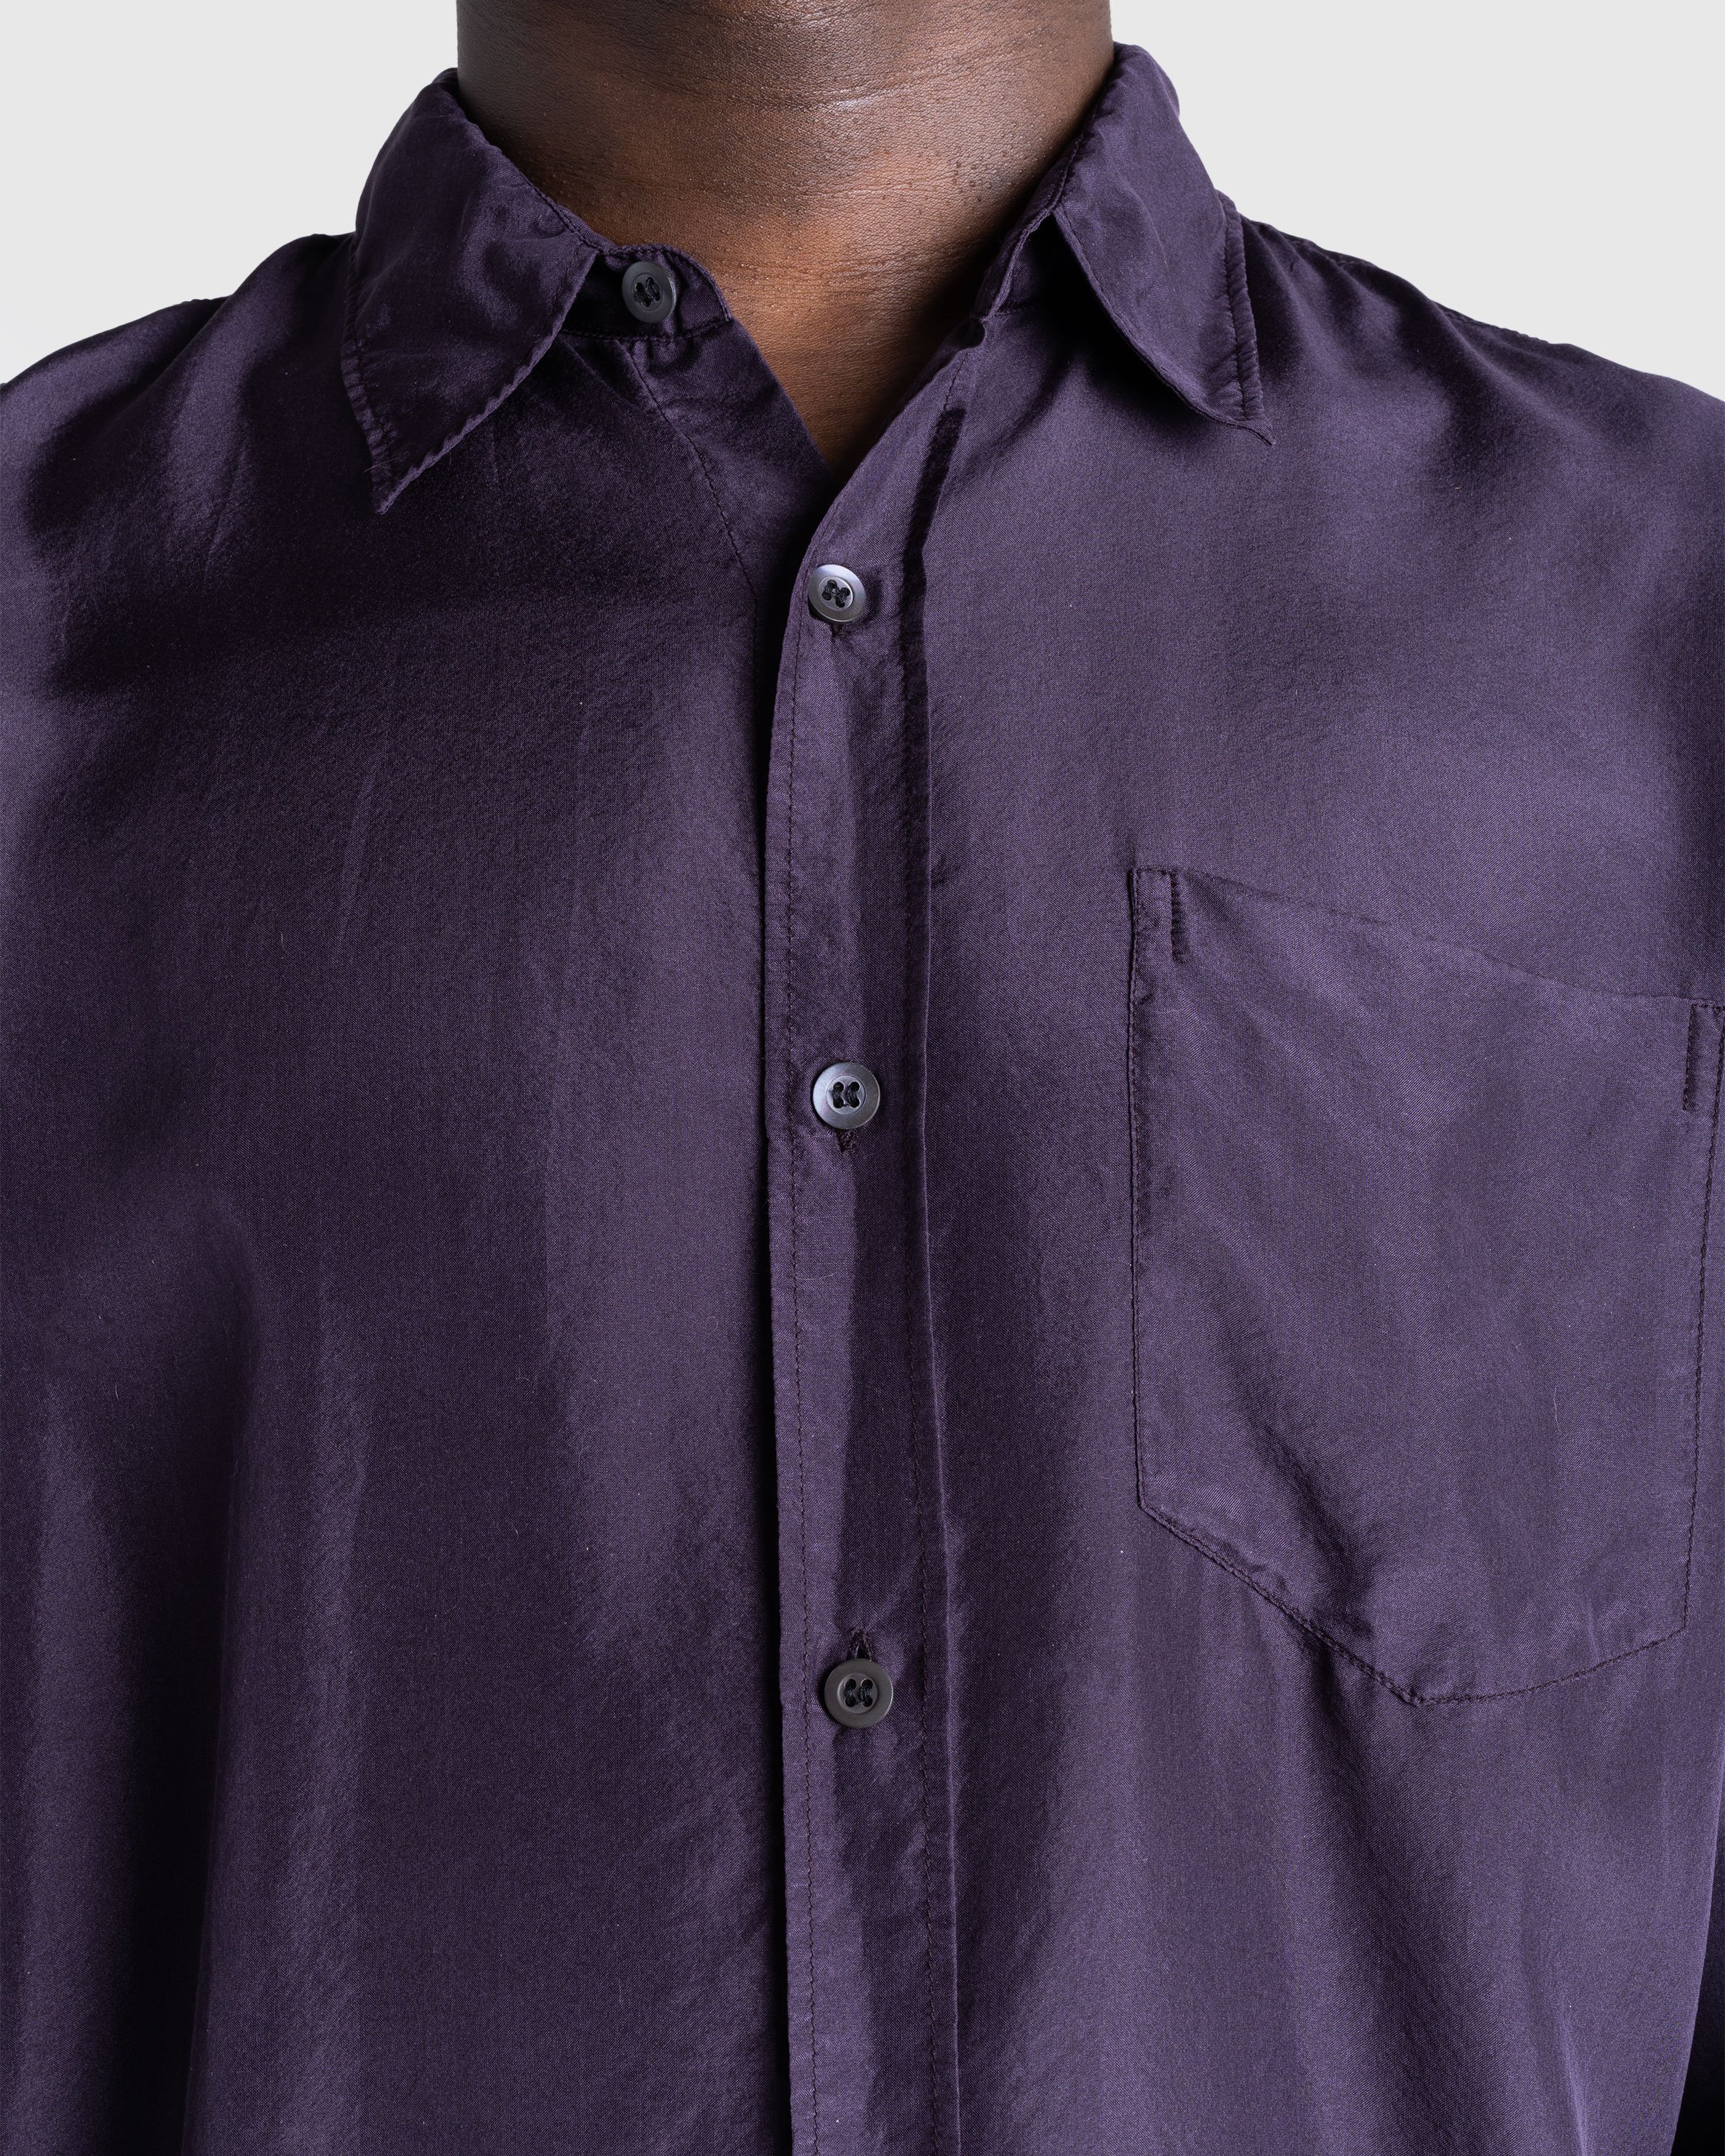 Dries van Noten - CORBINO GD 8159 M.W.SHIRT DPU - Clothing - Purple - Image 5